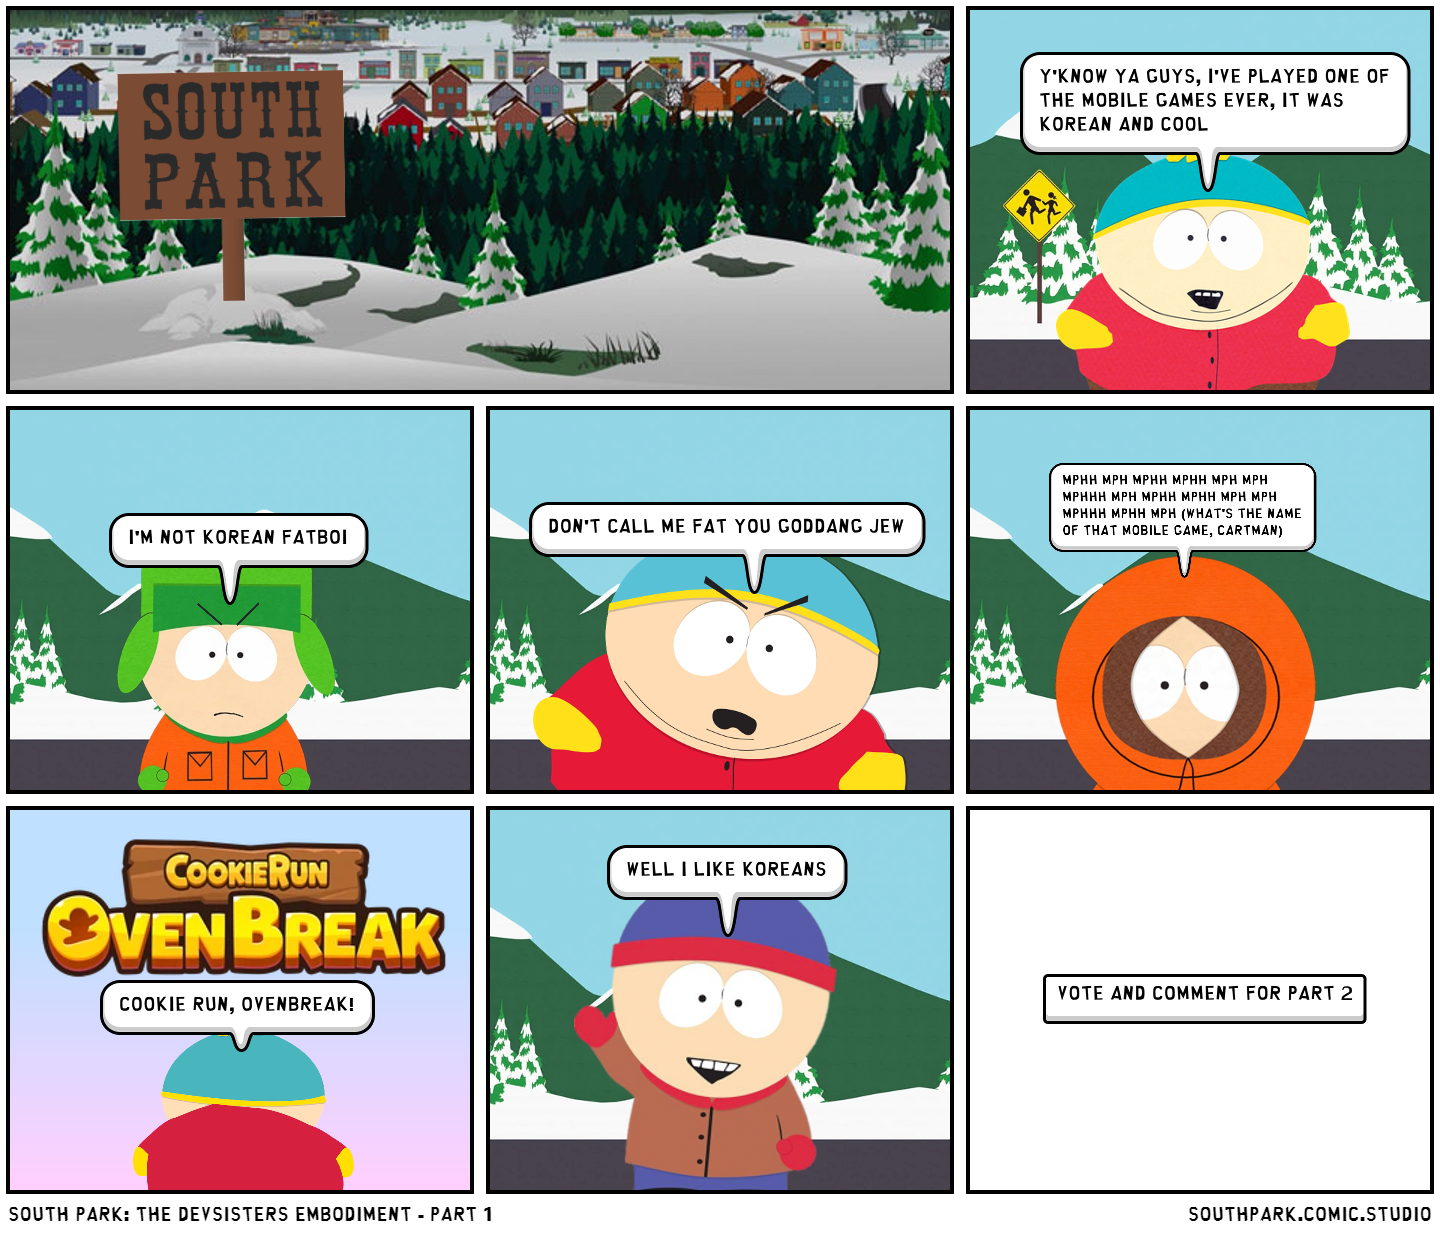 South Park: The Devsisters Embodiment - part 1